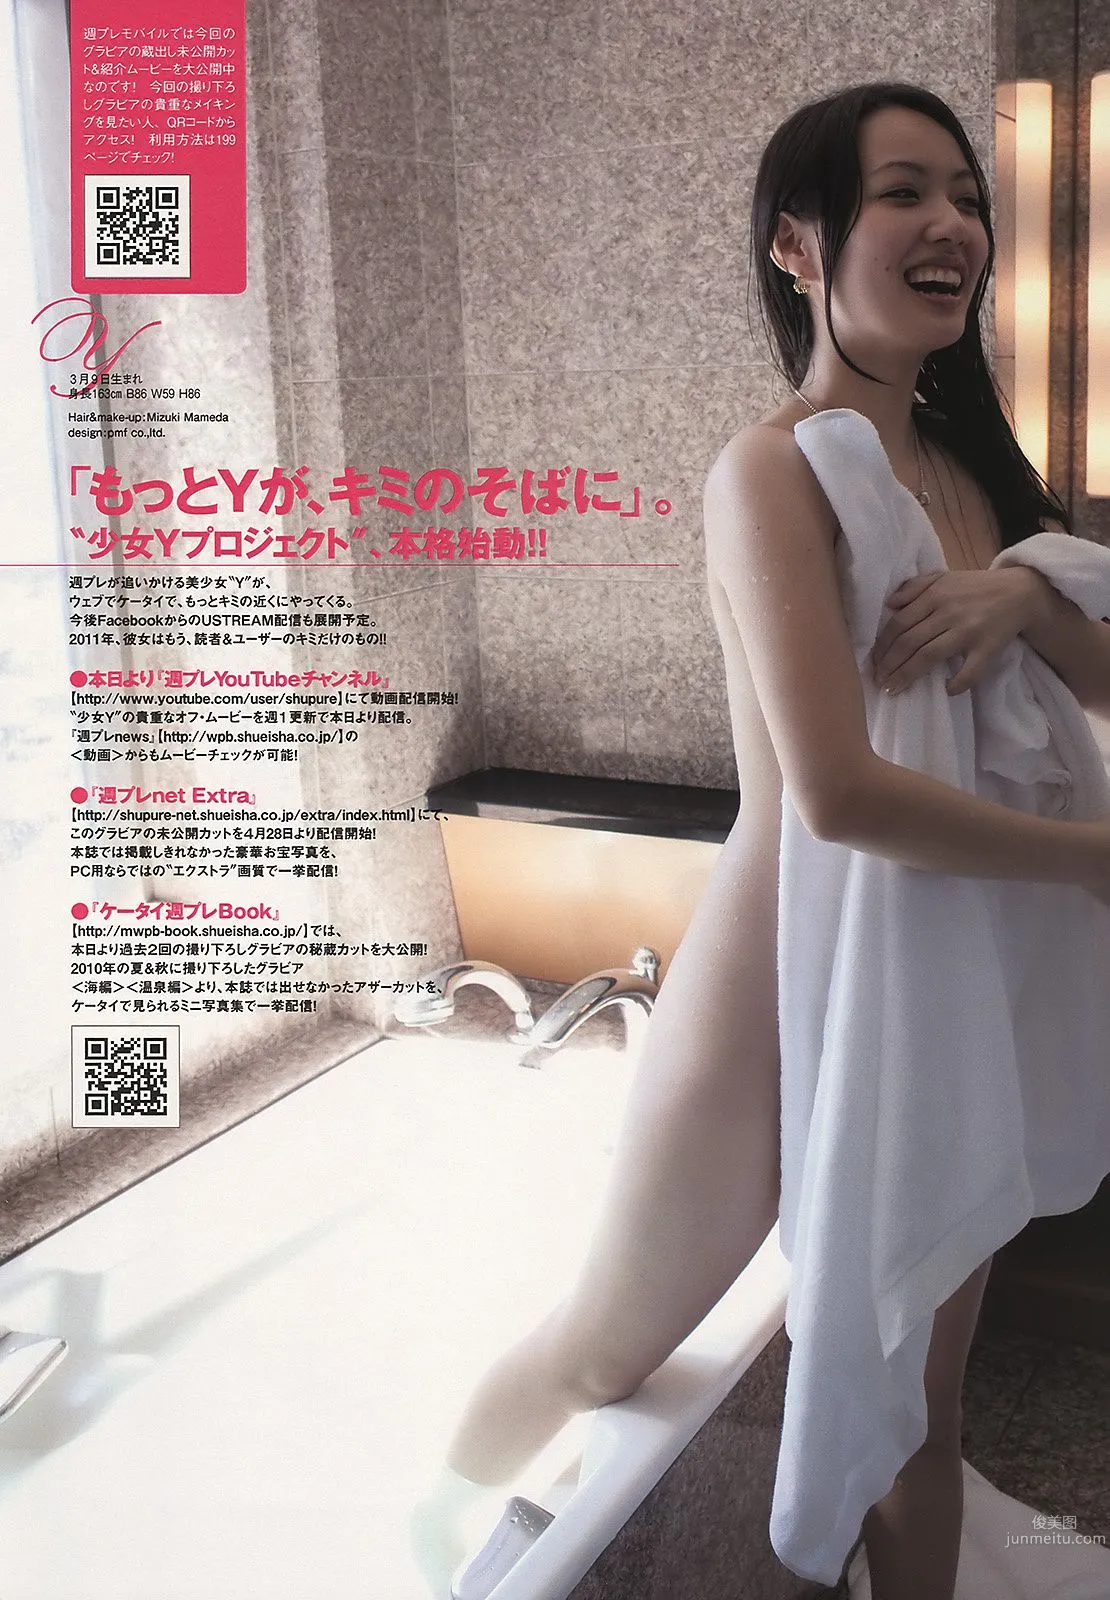 武井咲 竹富圣花 宫岛咲良 夏菜 吉木りさ AKB48 最上ゆき [Weekly Playboy] 2011年No.19-20 写真杂志35